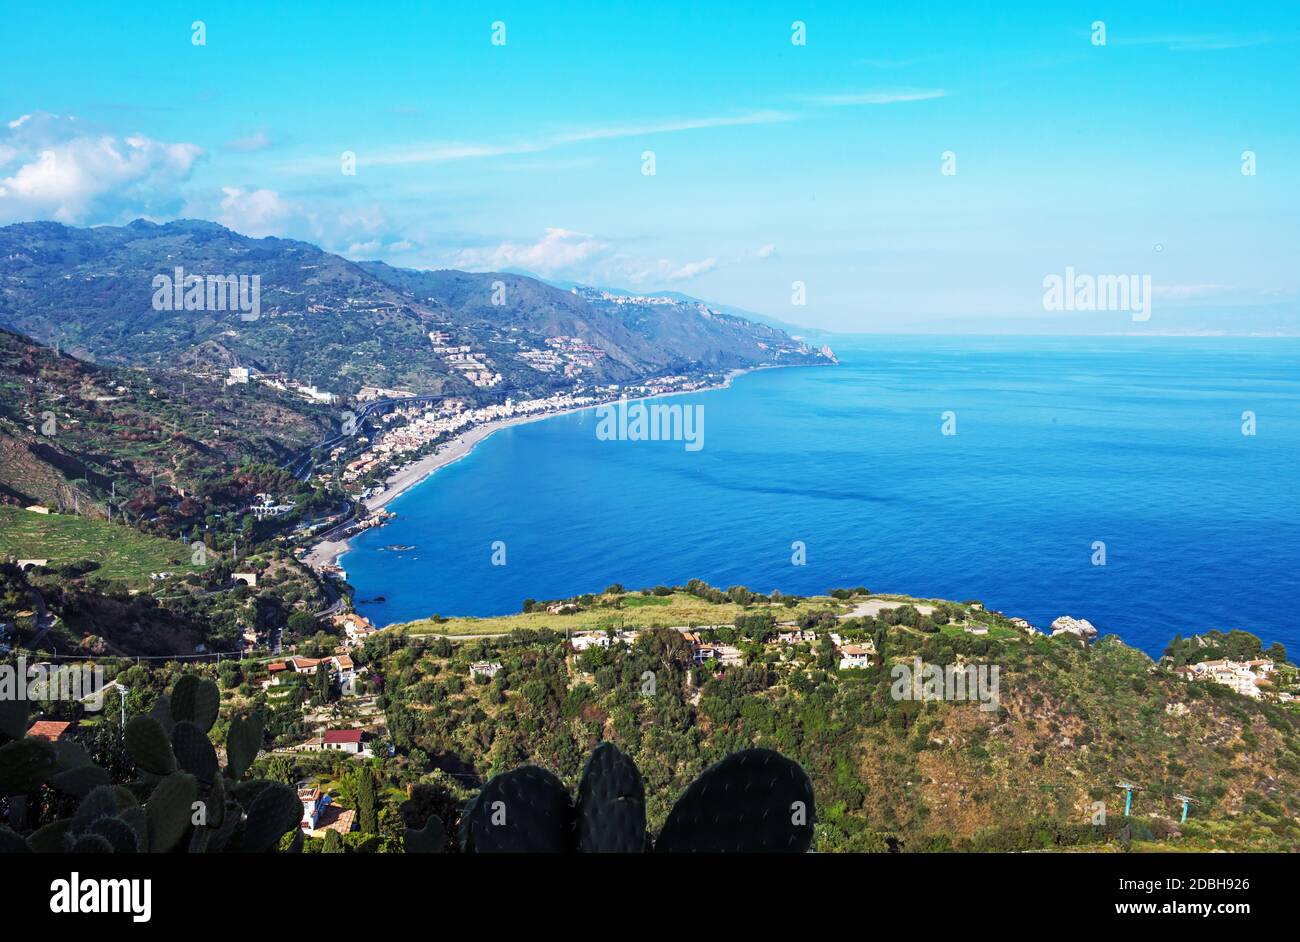 the Bay of Taormina Stock Photo